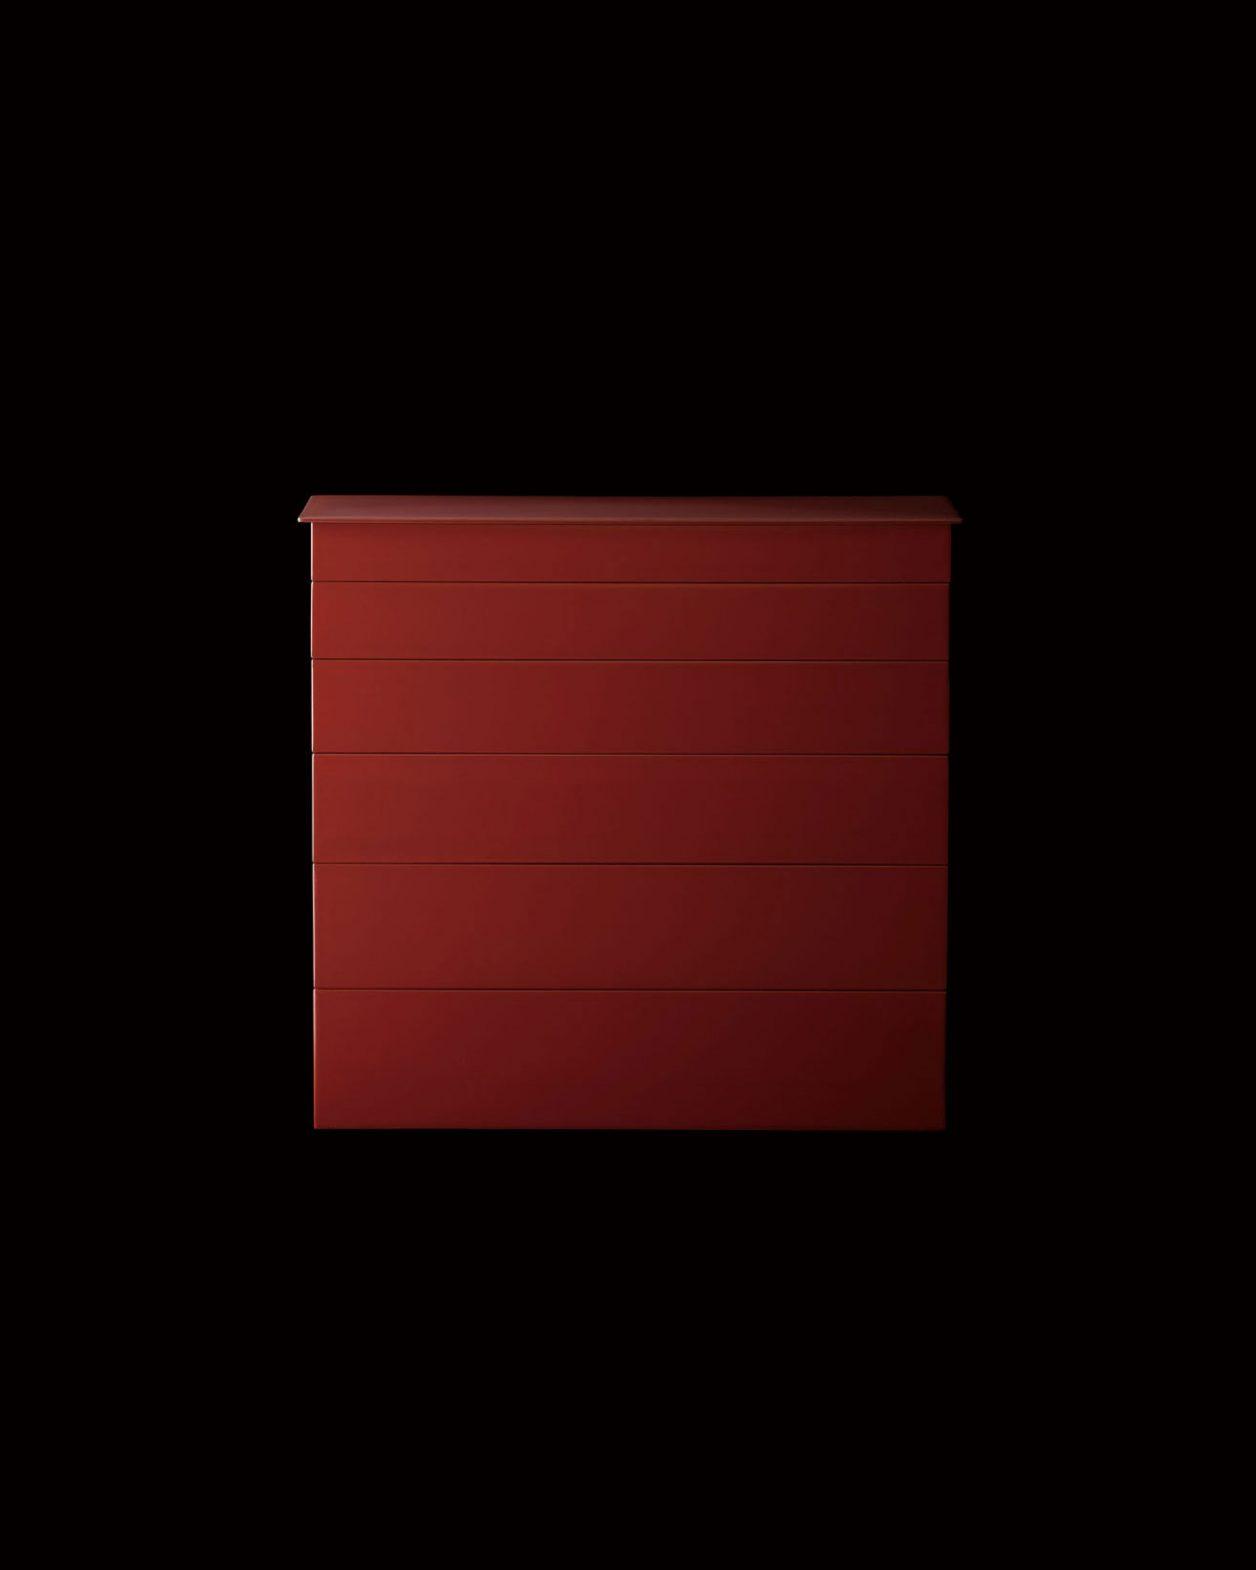 塗師・赤木明登が 〈和光ホール〉初の個展を開催。新作の小家具もお目見え。